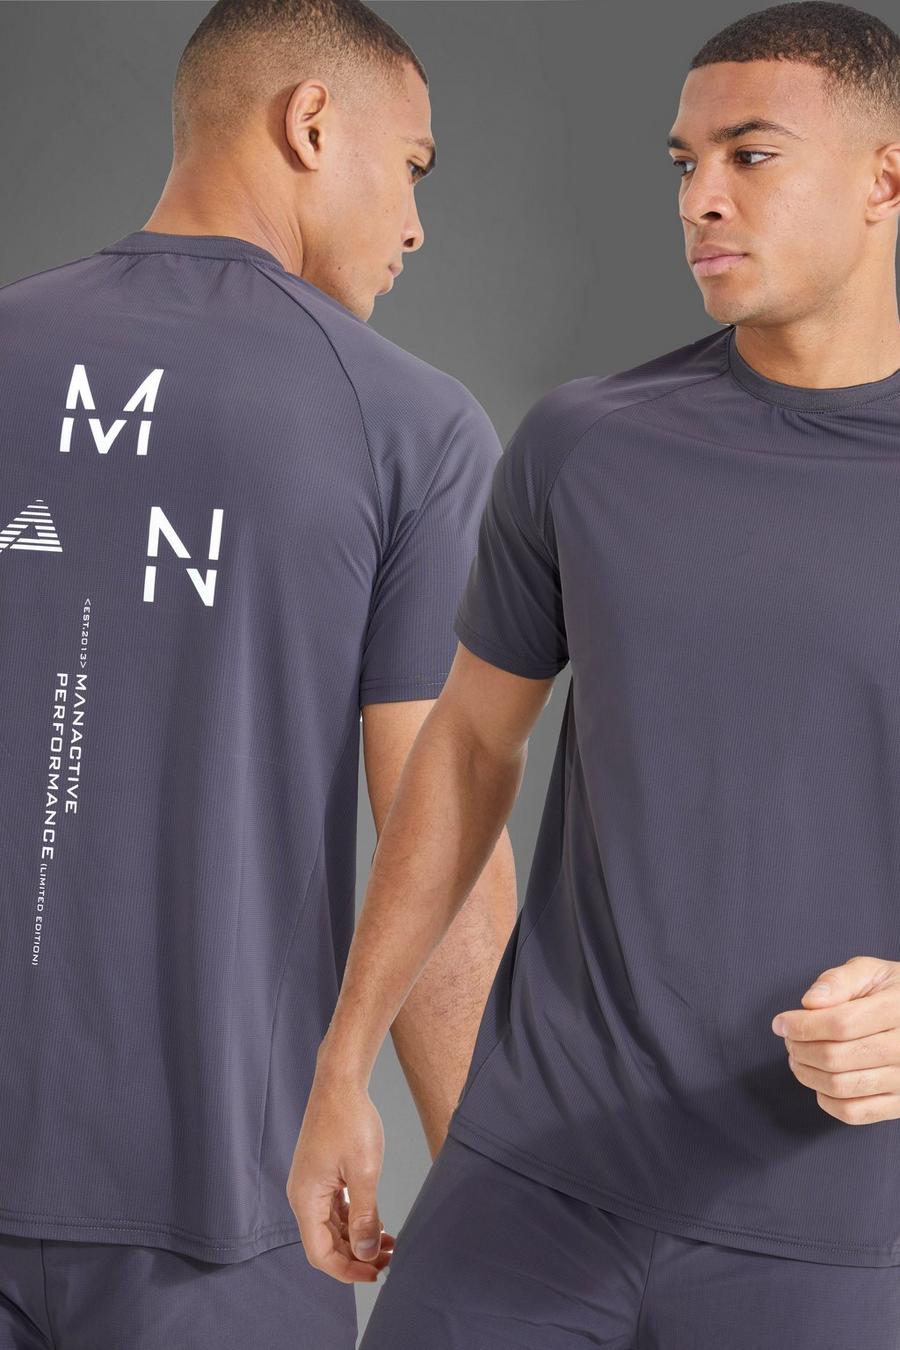 T-shirt Man Active Gym con stampa riflettente sul retro, Charcoal grigio